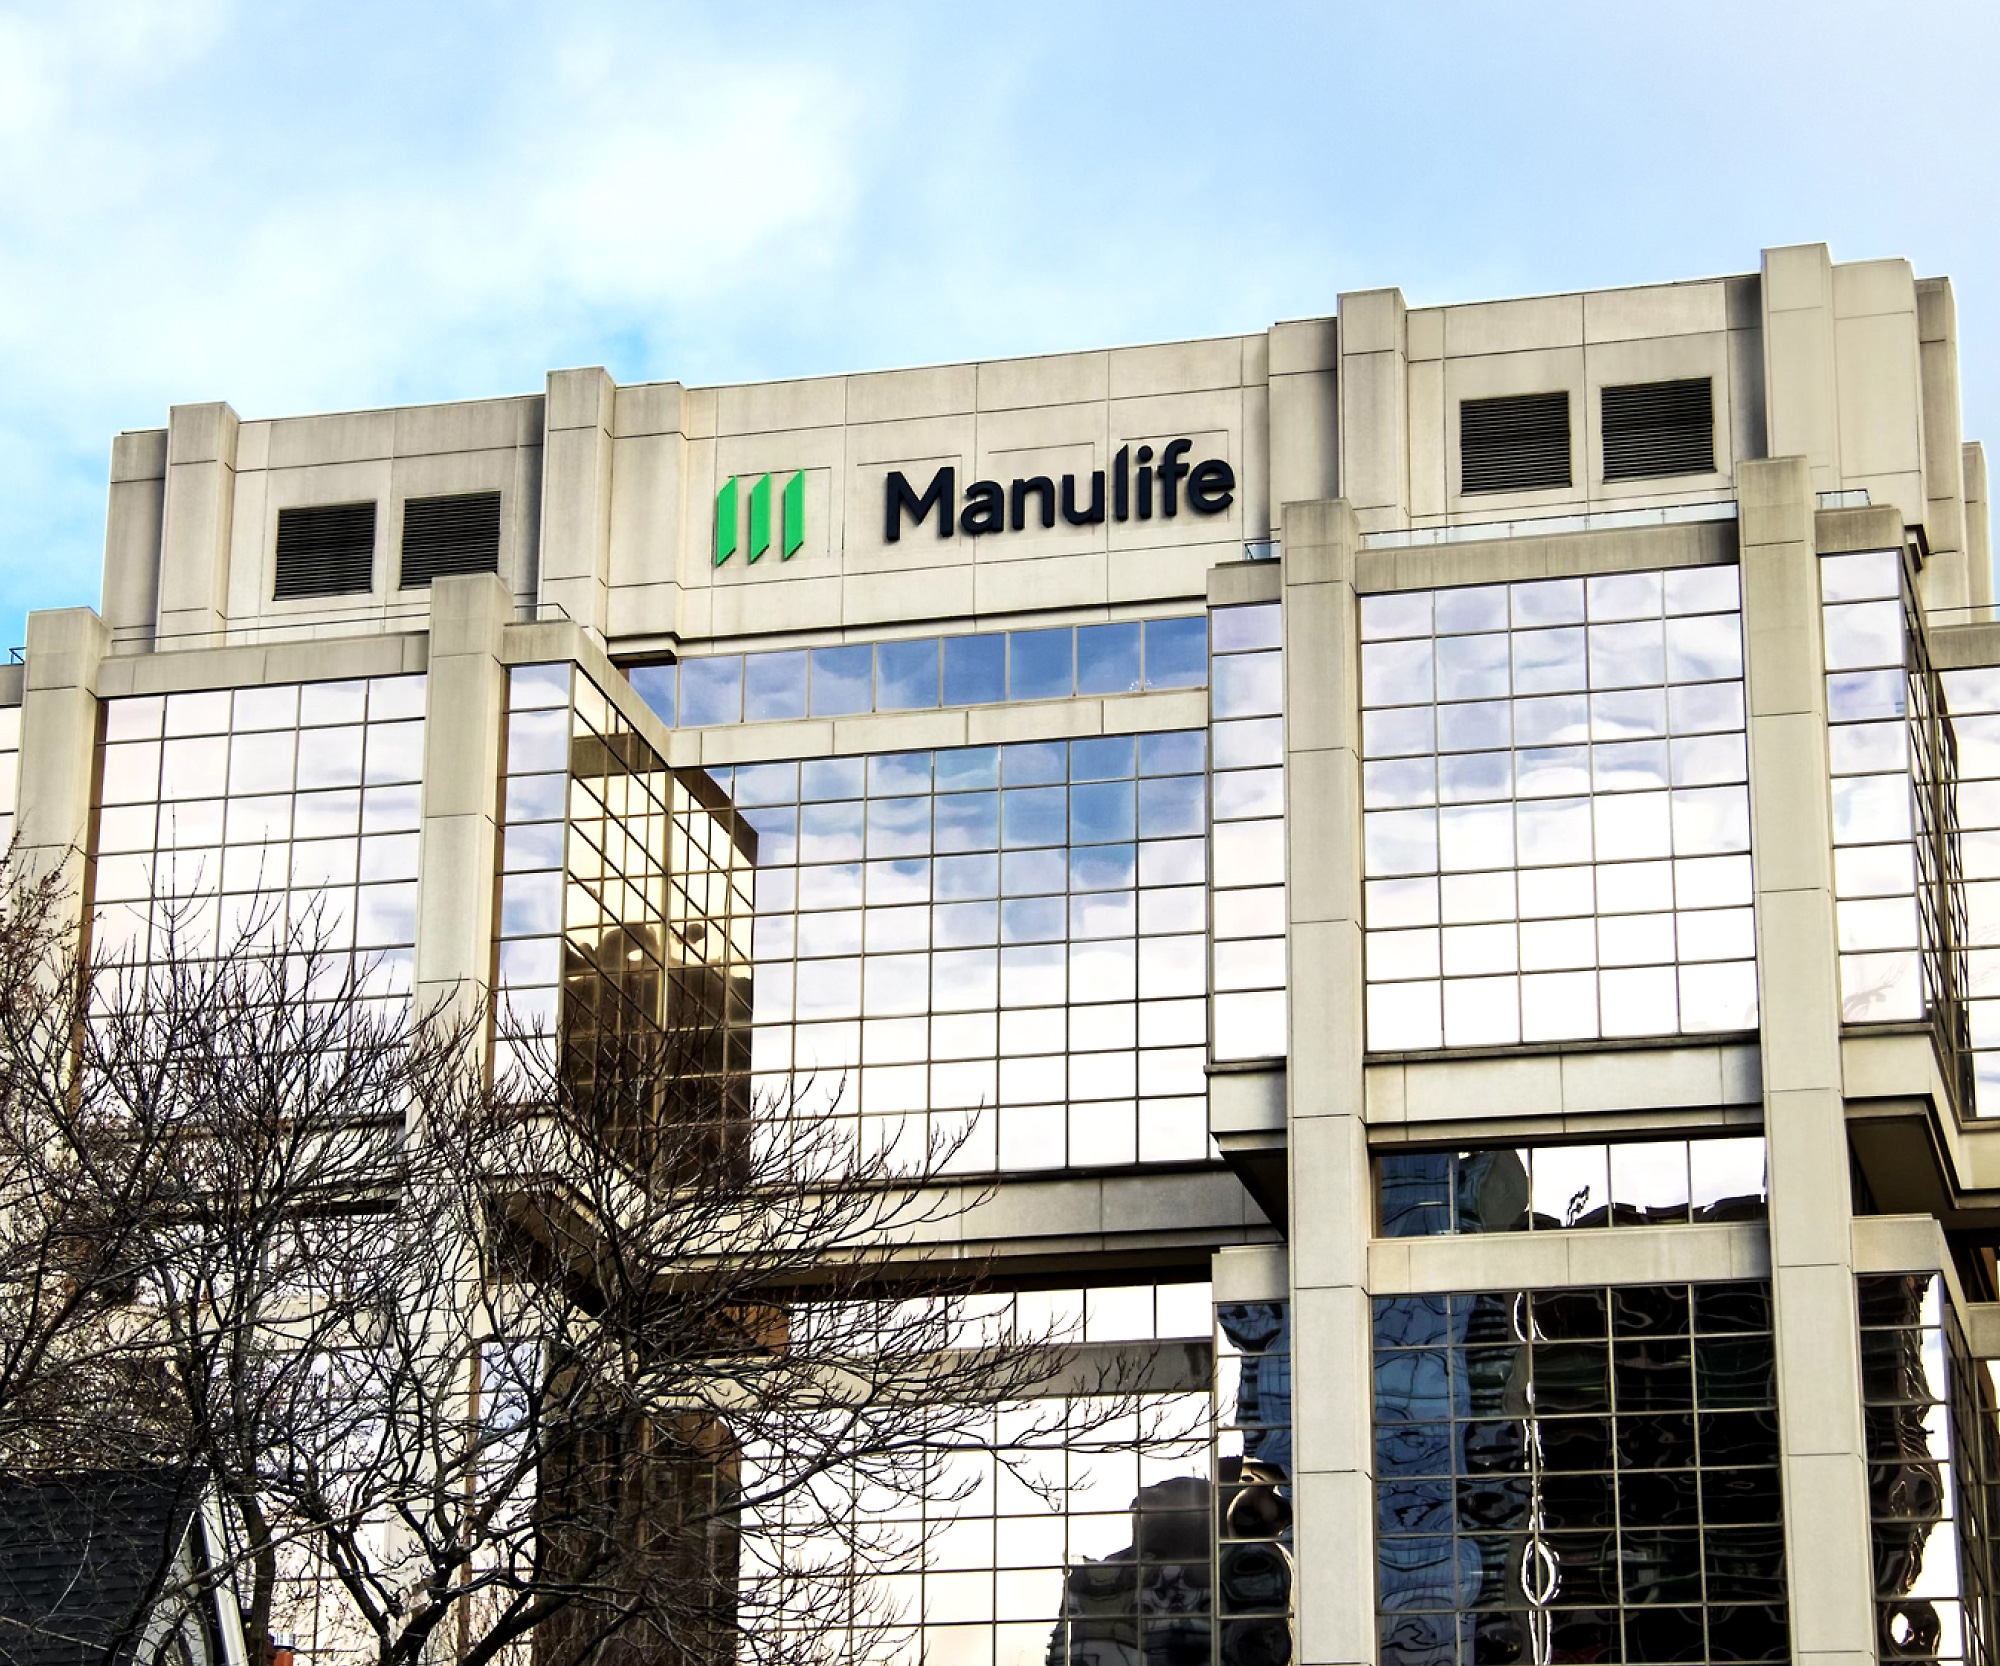 Zgrada sa logotipom preduzeća Manulife na njoj